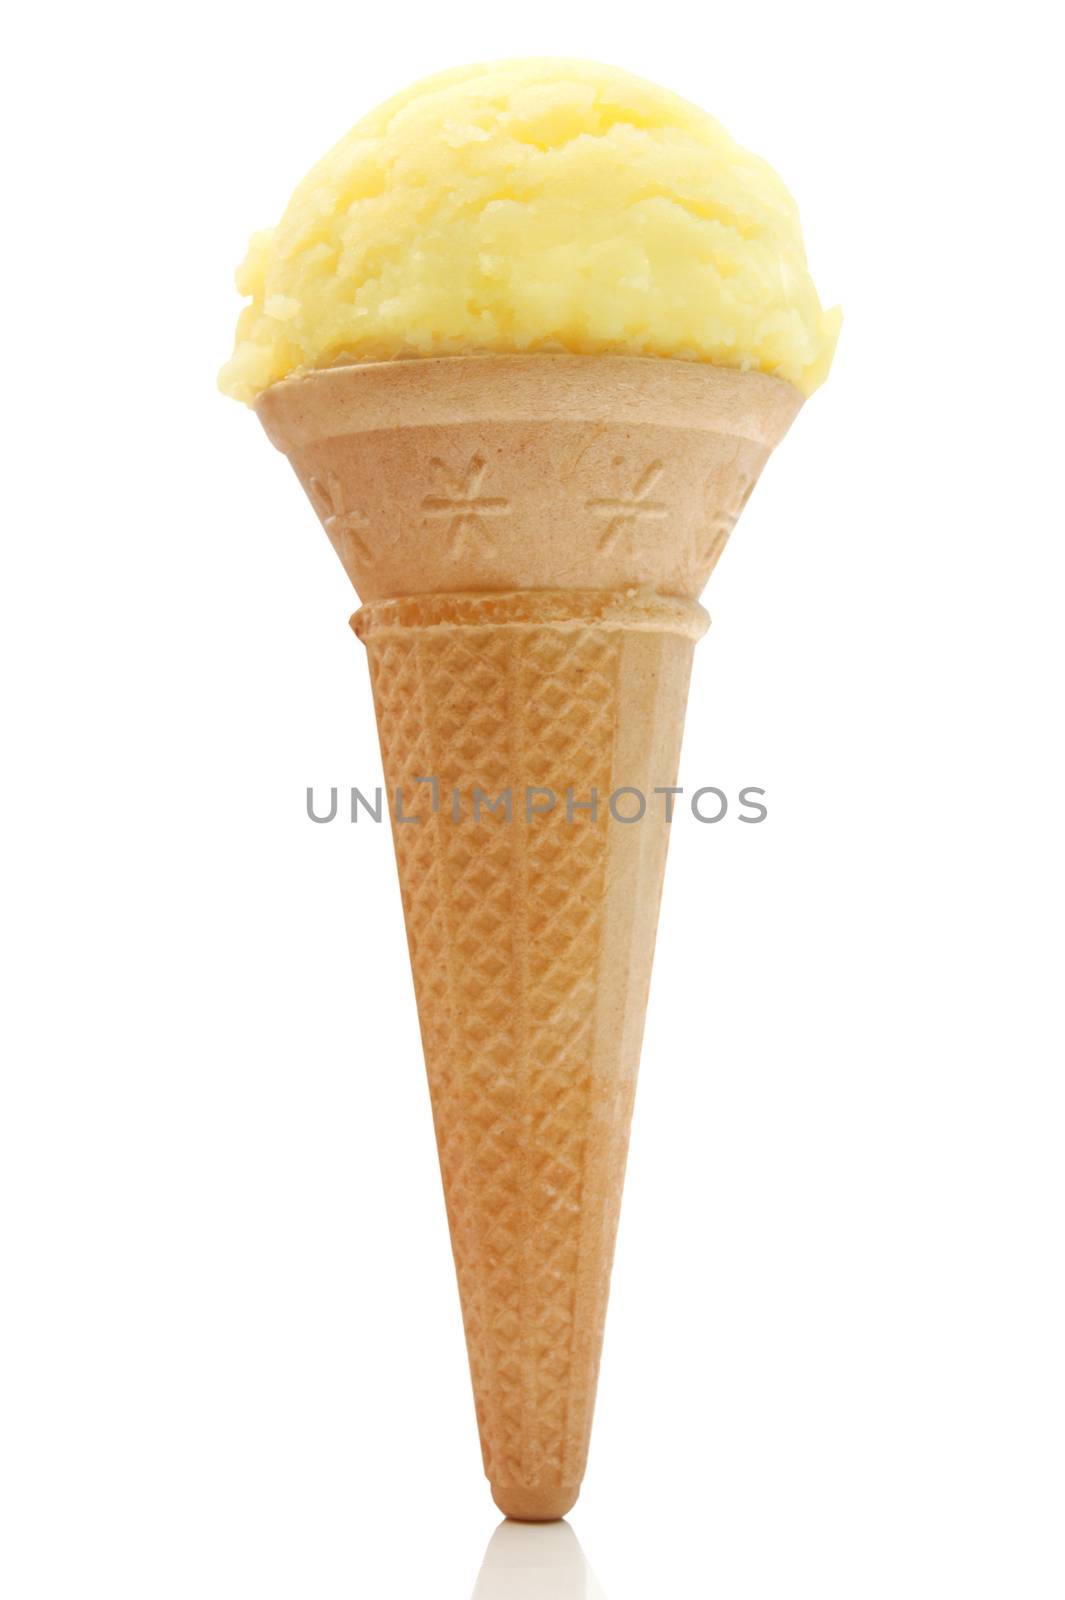 Ice cream cone by unikpix